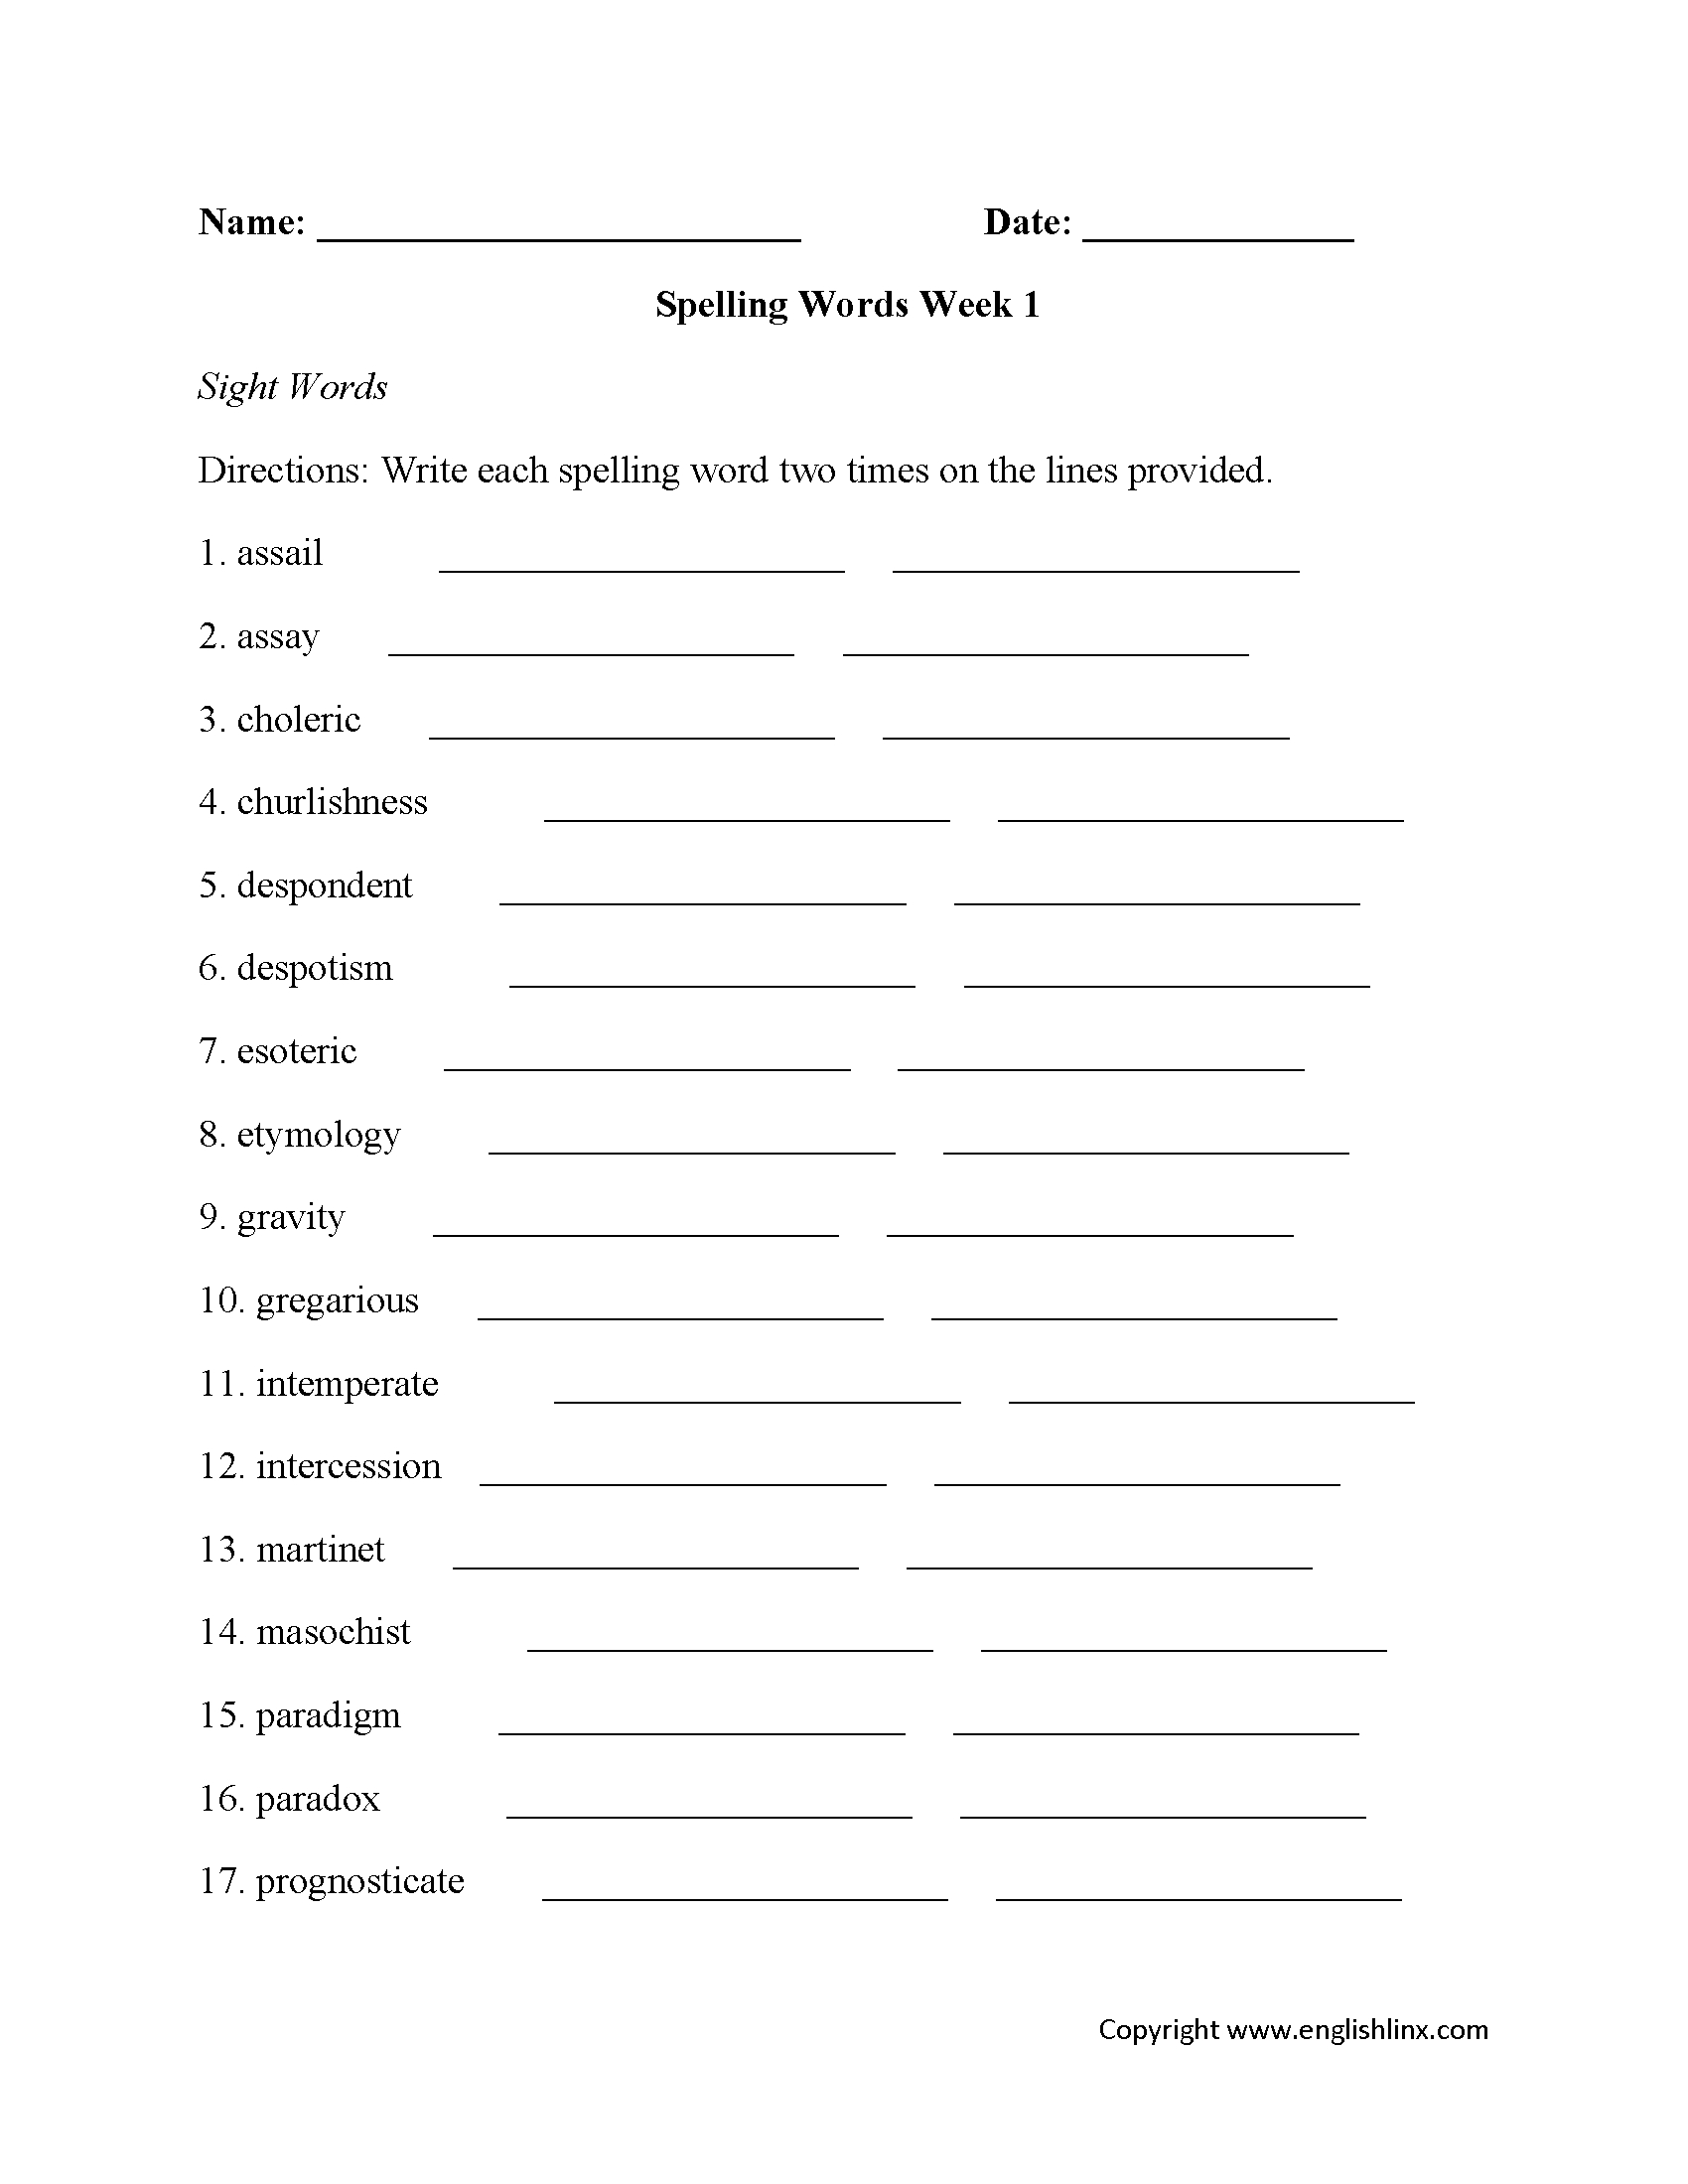 Spelling Worksheets | High School Spelling Worksheets - Free Printable Spelling Worksheets